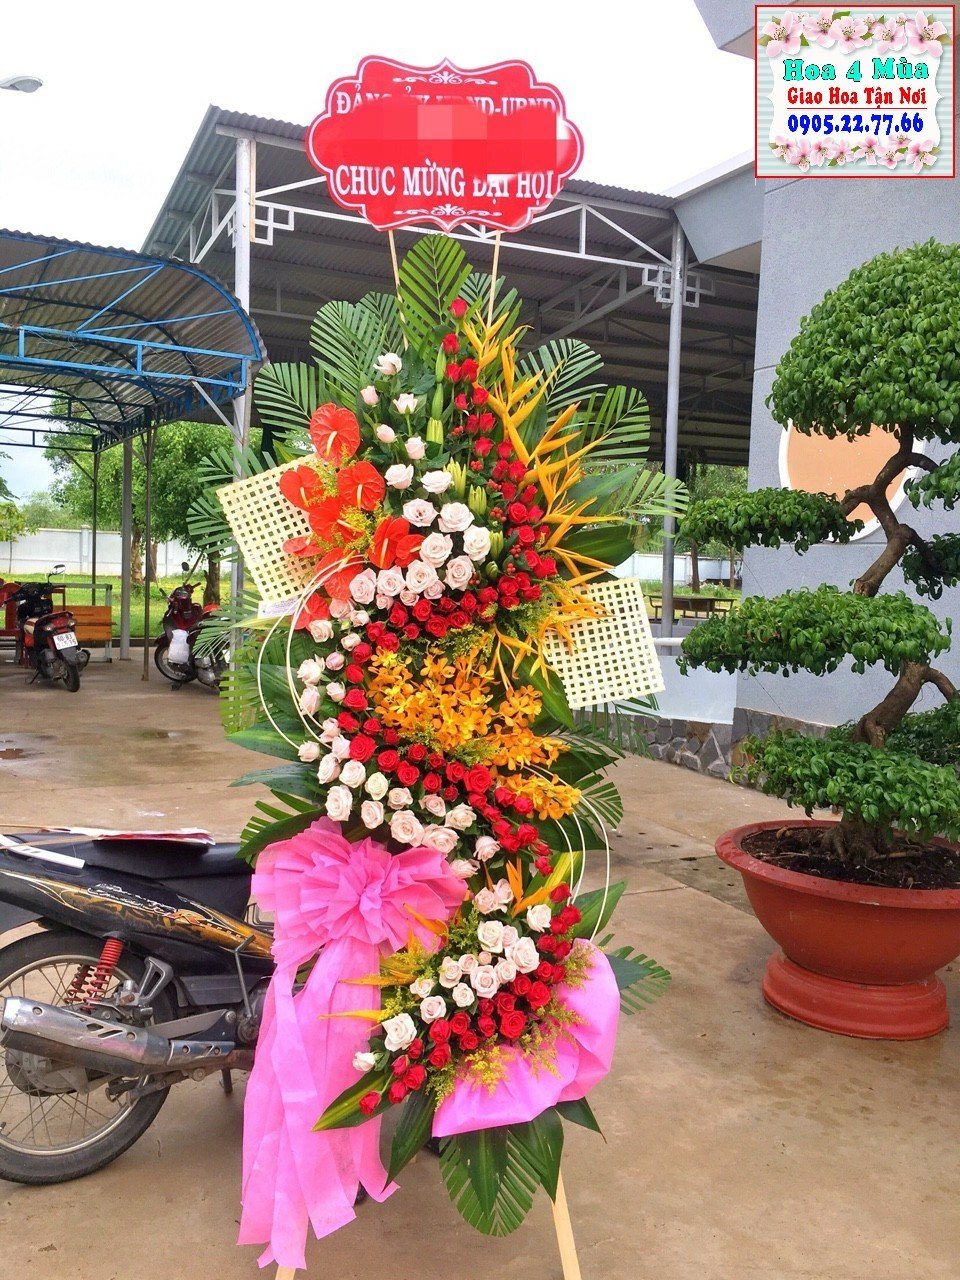 Mẫu Hoa khai trương tại điện hoa tươi huyện Ứng Hòa, Hà Nội